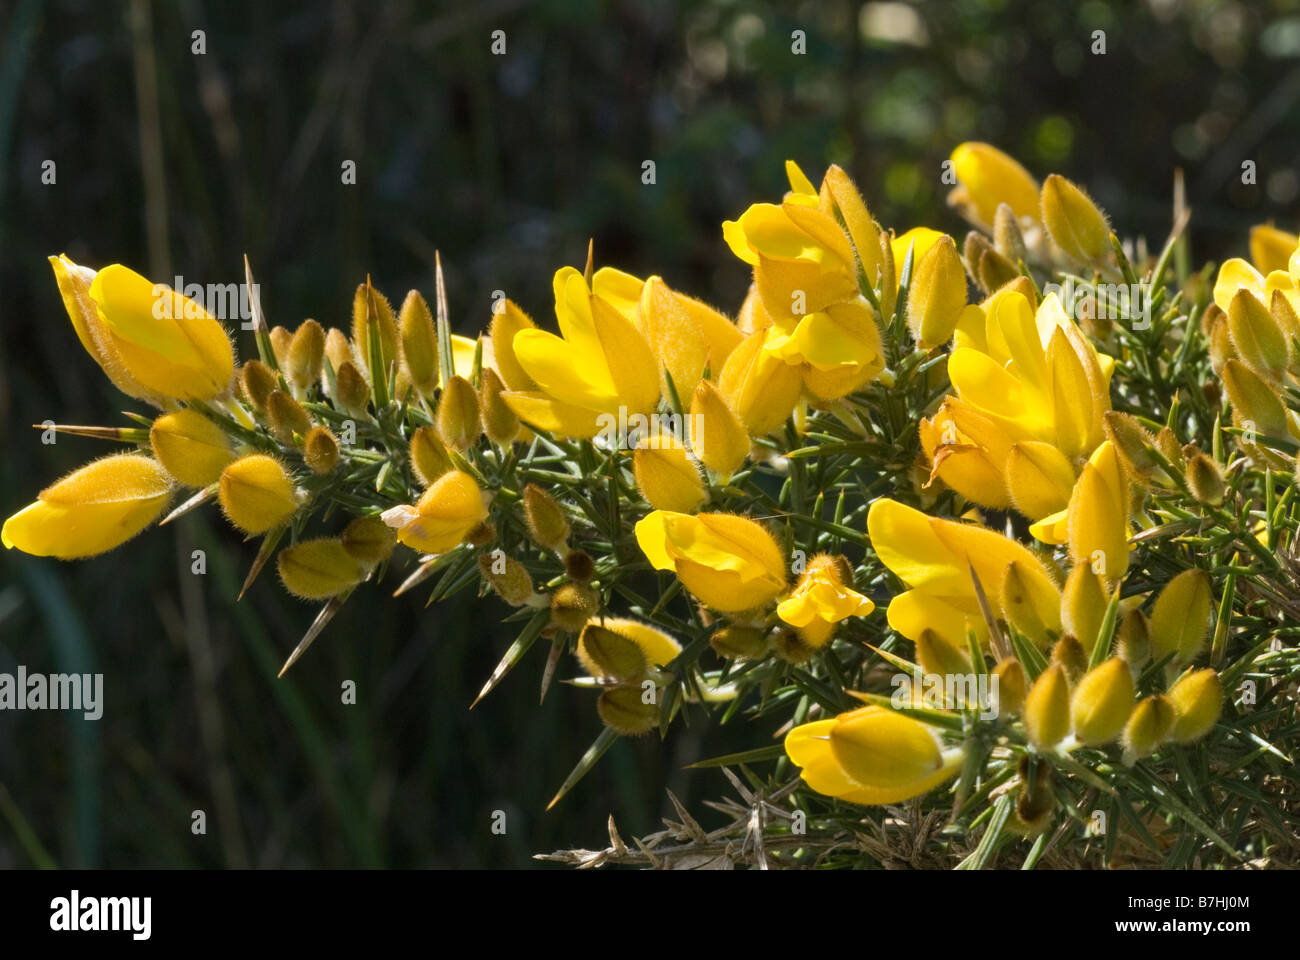 L'ajonc commun (Ulex europaeus) détail de fleurs Banque D'Images